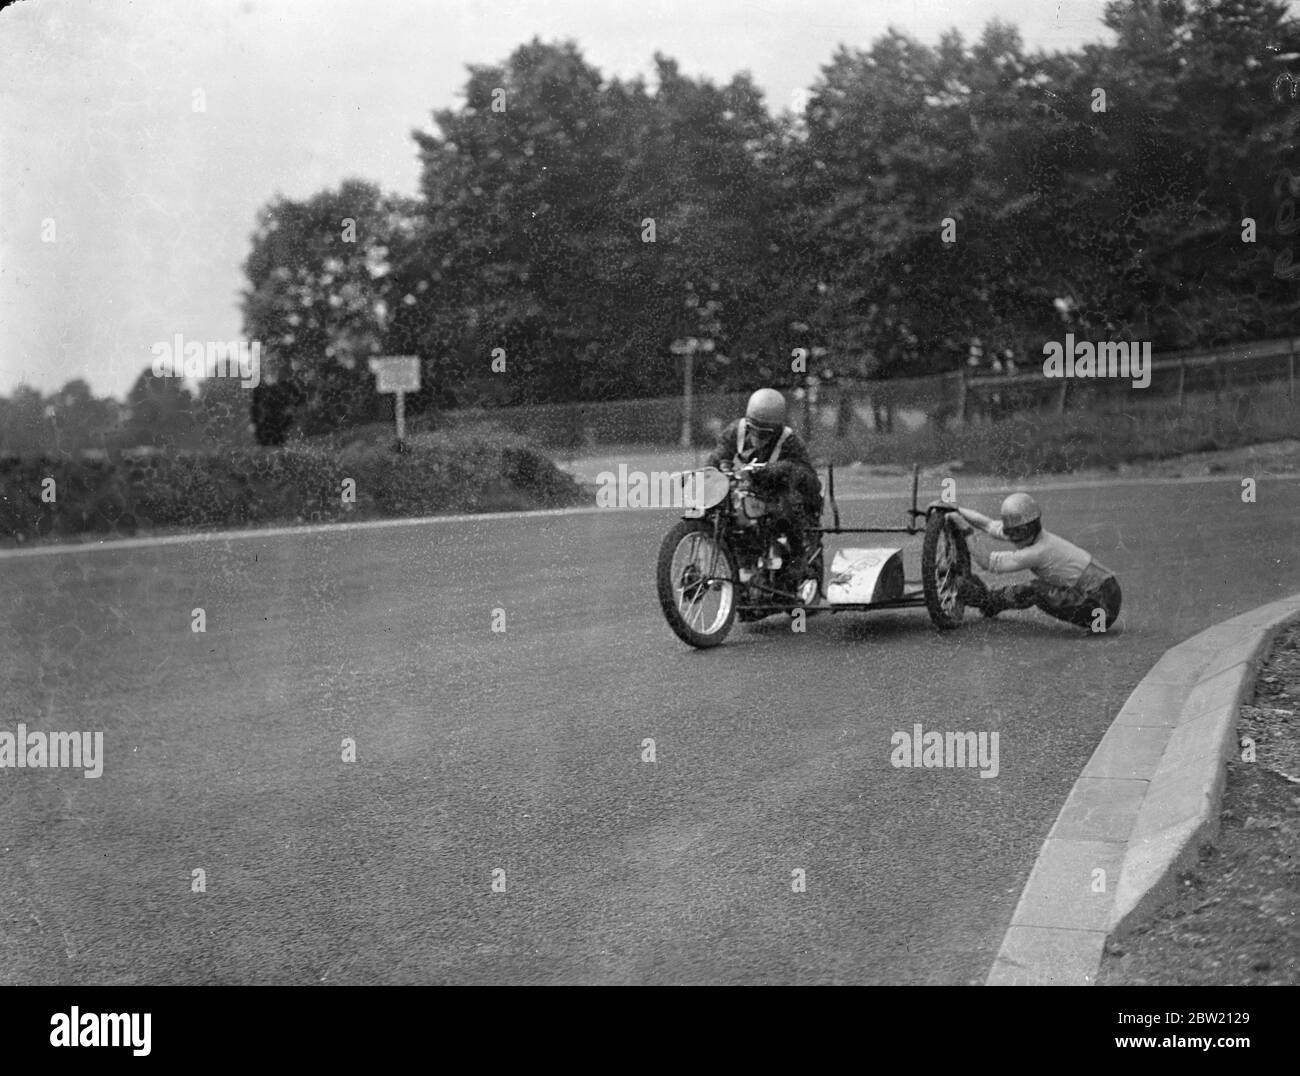 Les motocyclistes ont eu une dernière pratique sur le circuit de course de Crystal Palace Road pour la réunion du Grand Prix de Londres aujourd'hui (samedi). Le passager est presque au sol alors qu'il se raccroche à une roue quand John Surtees tourne sur New Zealand Bend. 17 juillet 1937. Banque D'Images